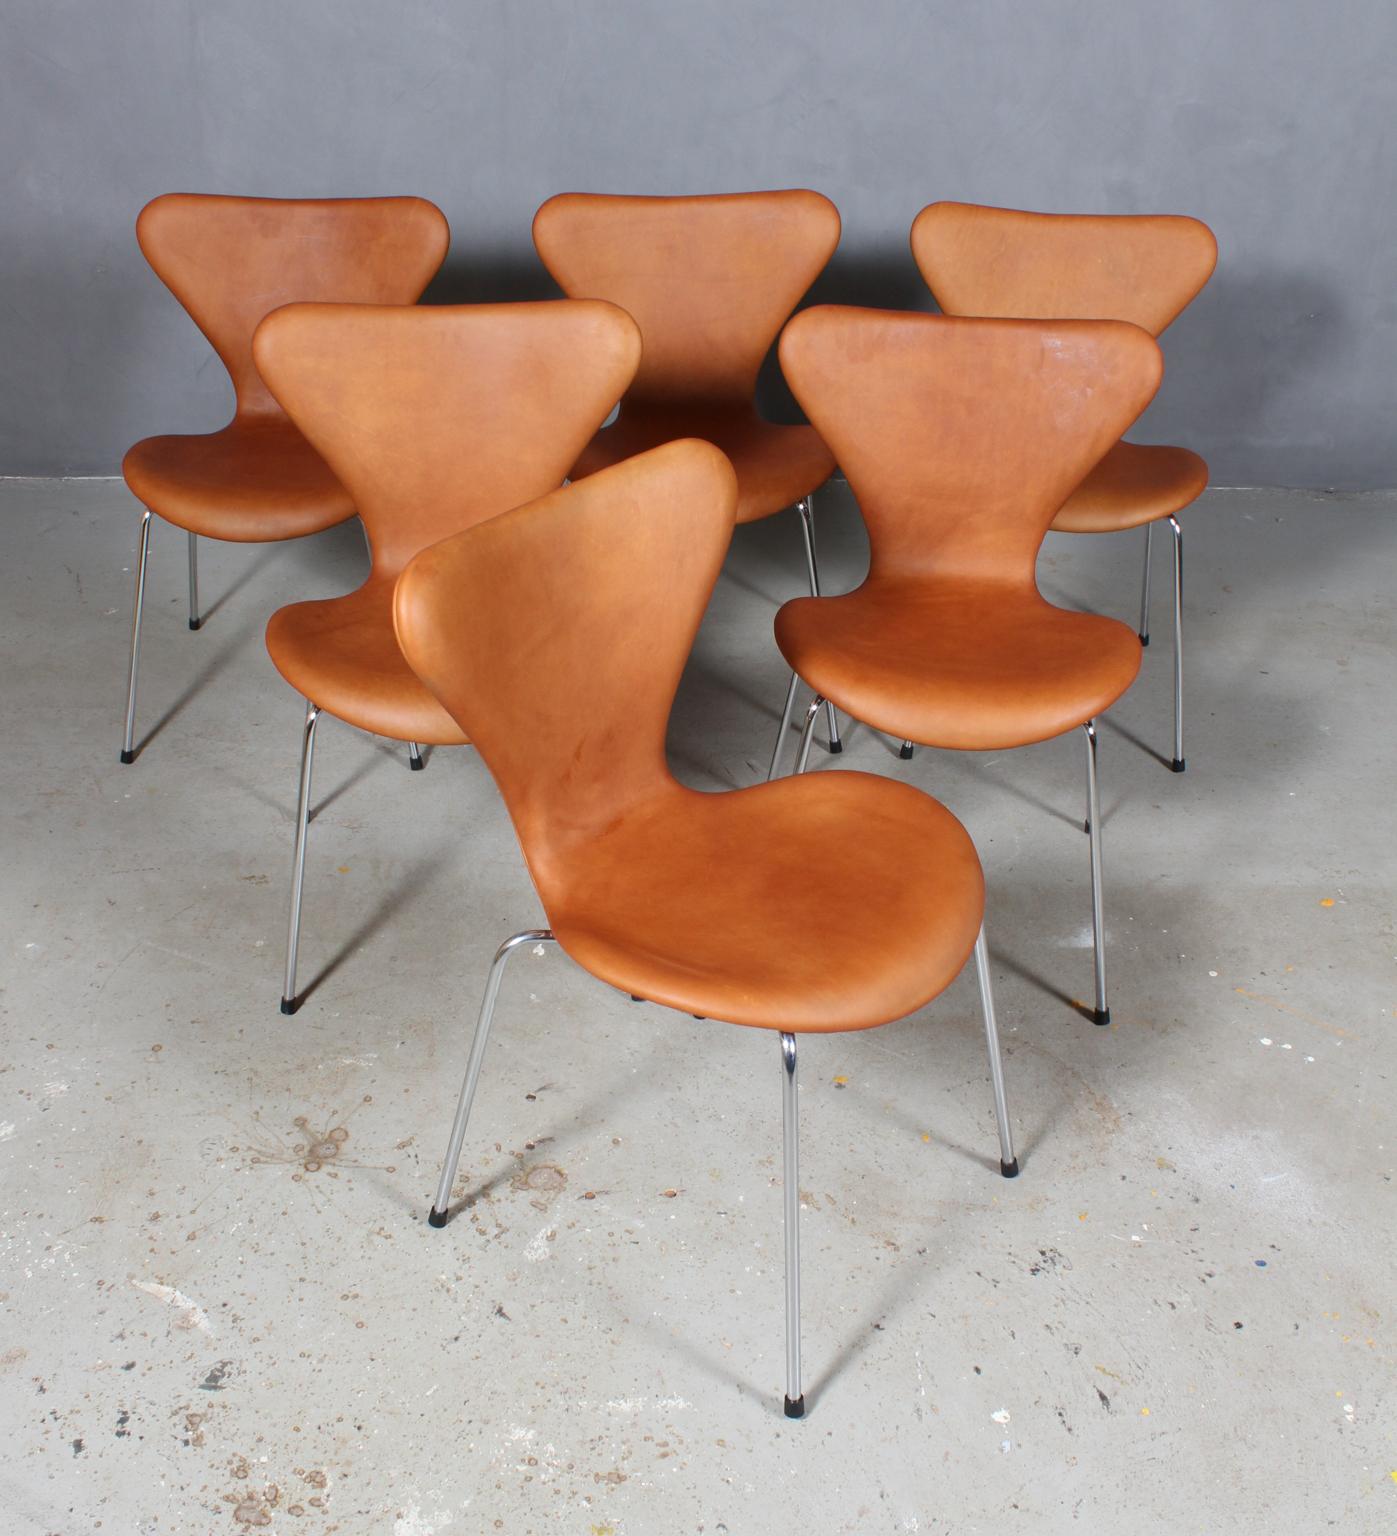 Chaise de salle à manger Arne Jacobsen nouvellement tapissée de cuir aniline vintage cognac.

Base en tube d'acier chromé.

Modèle 3107 Syveren, fabriqué par Fritz Hansen.